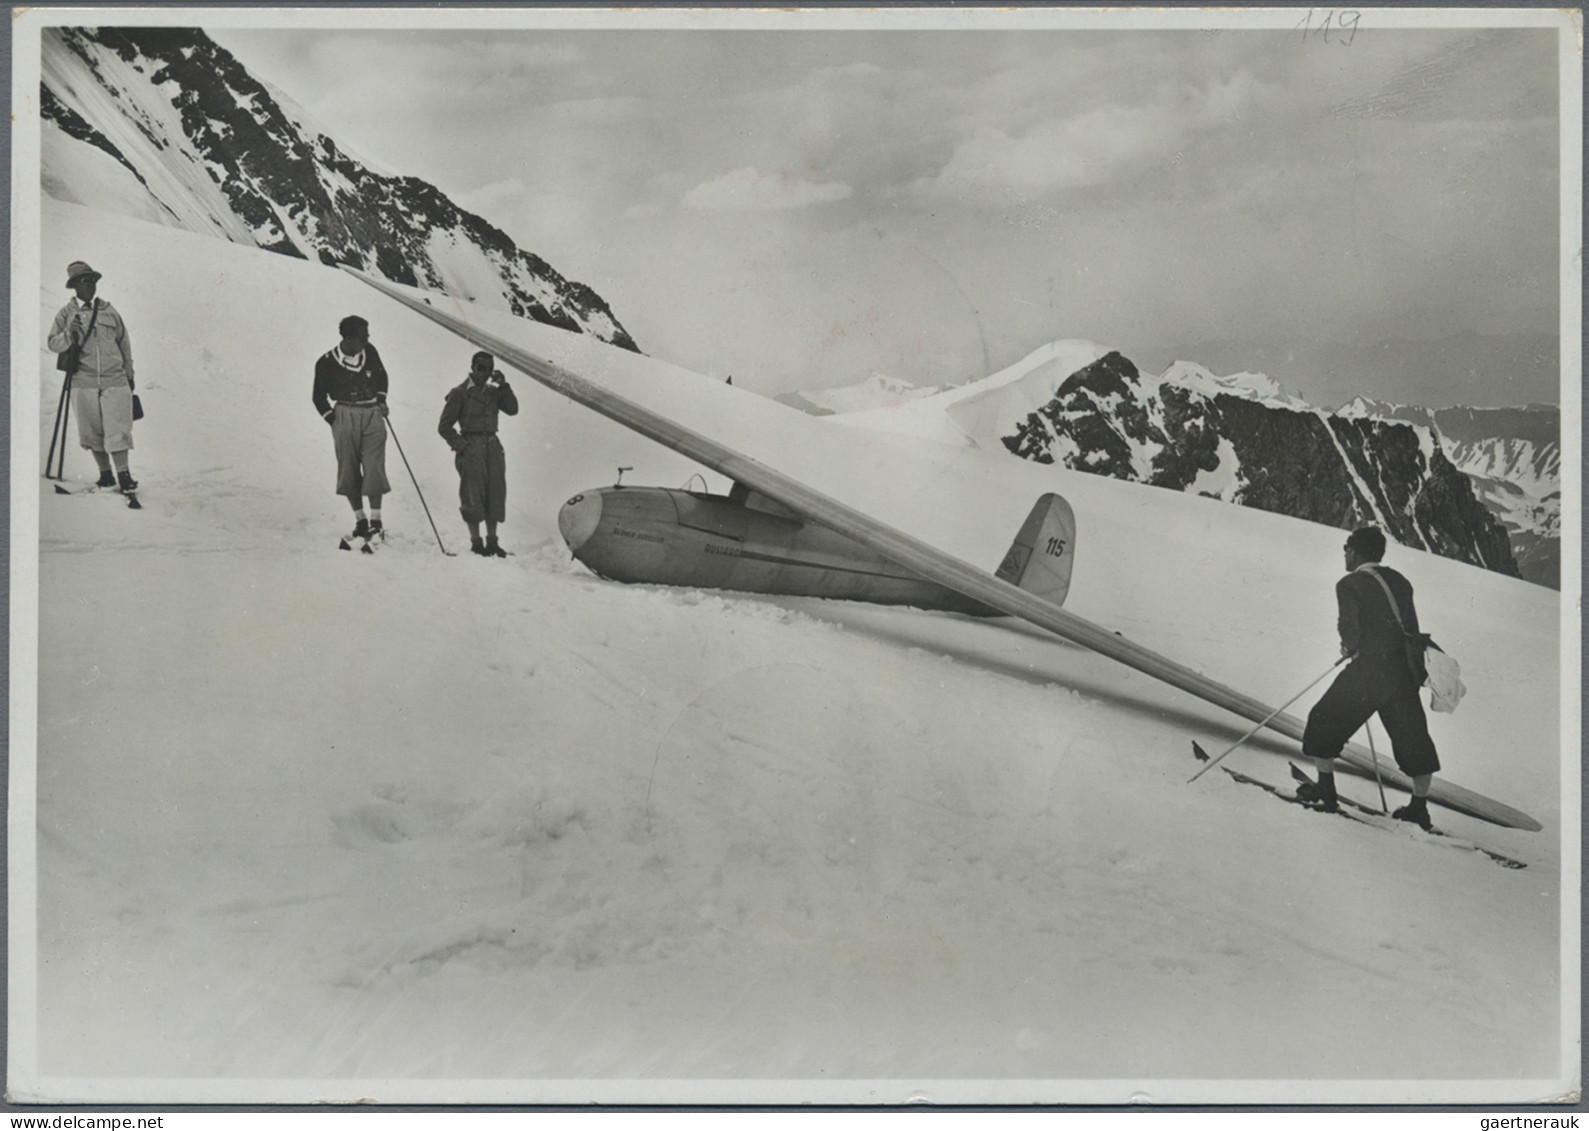 Liechtenstein - Besonderheiten: 1935, I.Int. Segelfliegerlager Jungfraujoch, 6 V - Andere